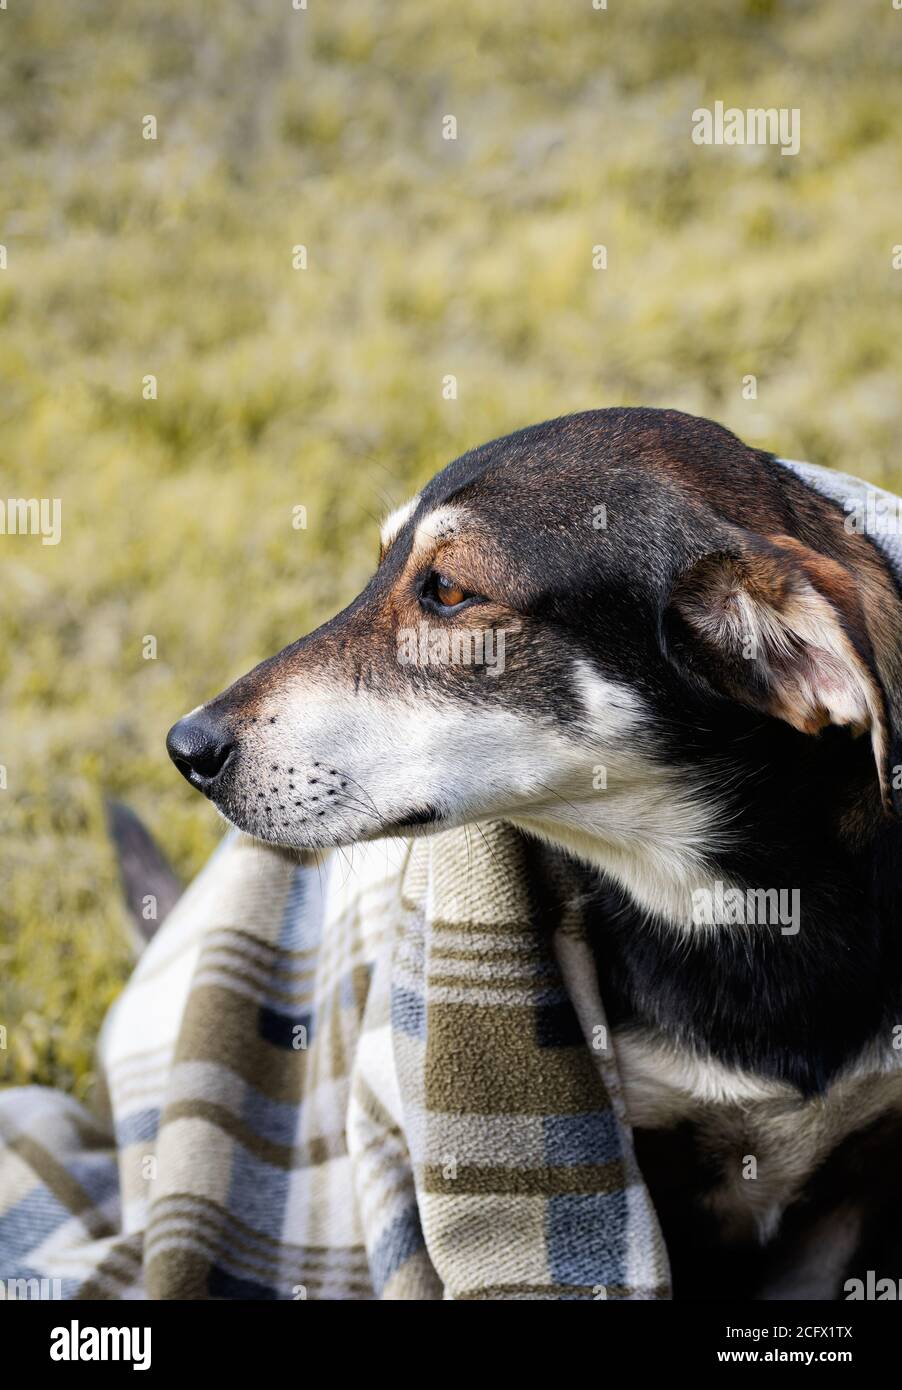 Trauriger Hund in karierten Decke gewickelt, auf Gras sitzend. Herbstfoto des Wandertieres. Nahaufnahme. Speicherplatz kopieren. Selektiver Fokus. Vertikales Zuschneiden. Stockfoto